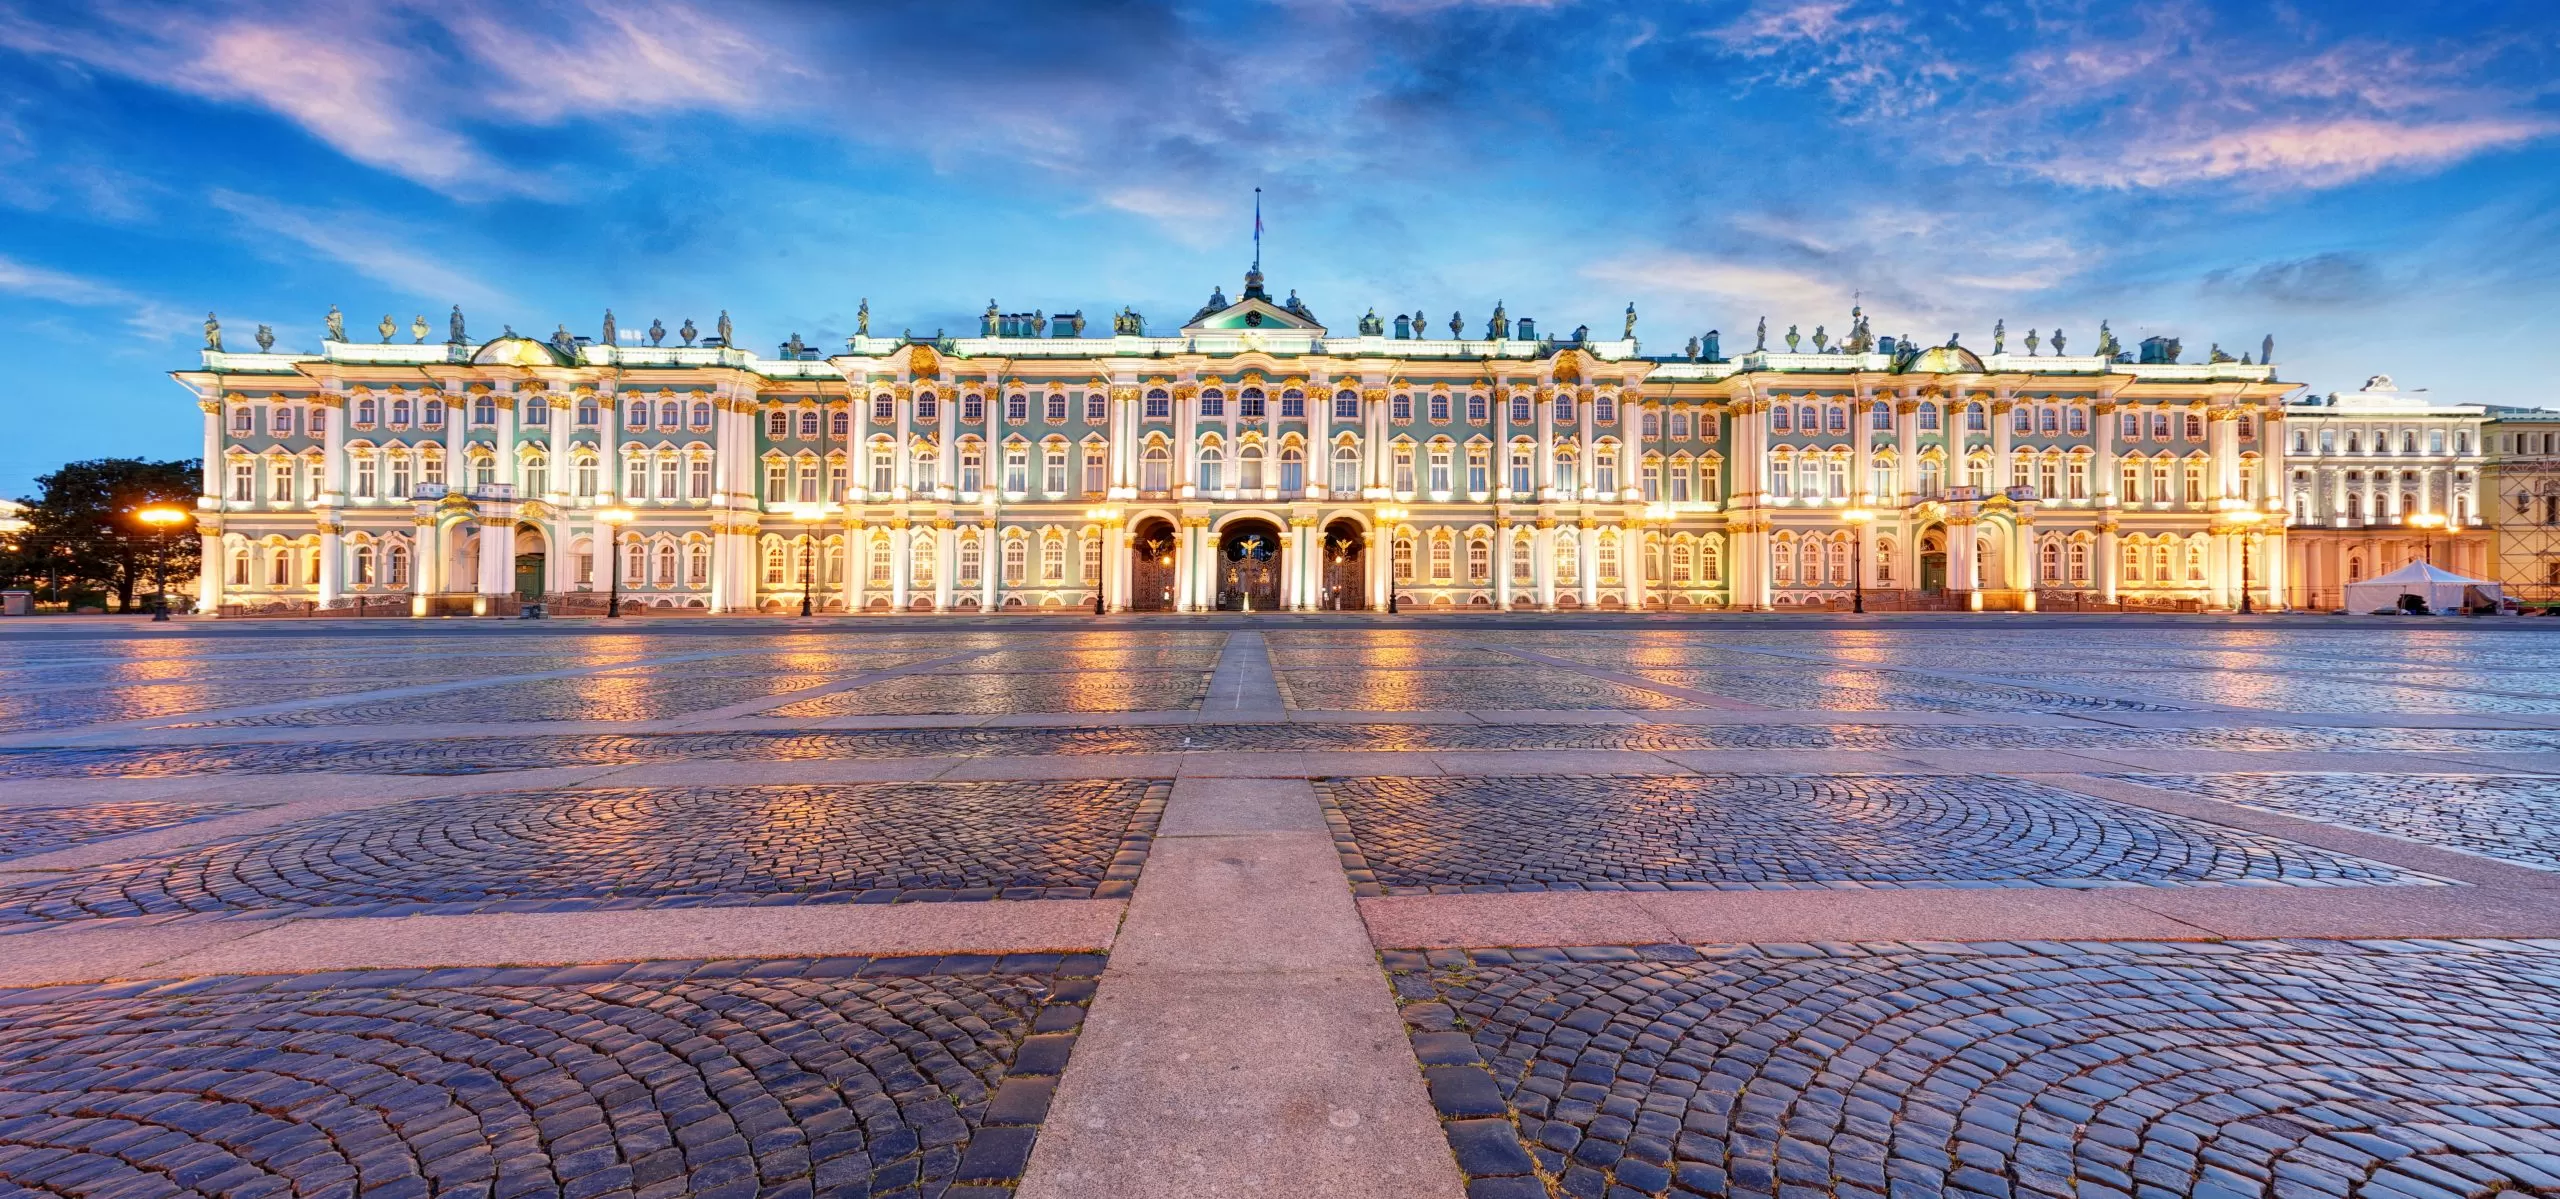 Prima licitaţie a muzeului Ermitaj din Sankt Petersburg pentru opere în format NFT se încheie pe 7 septembrie